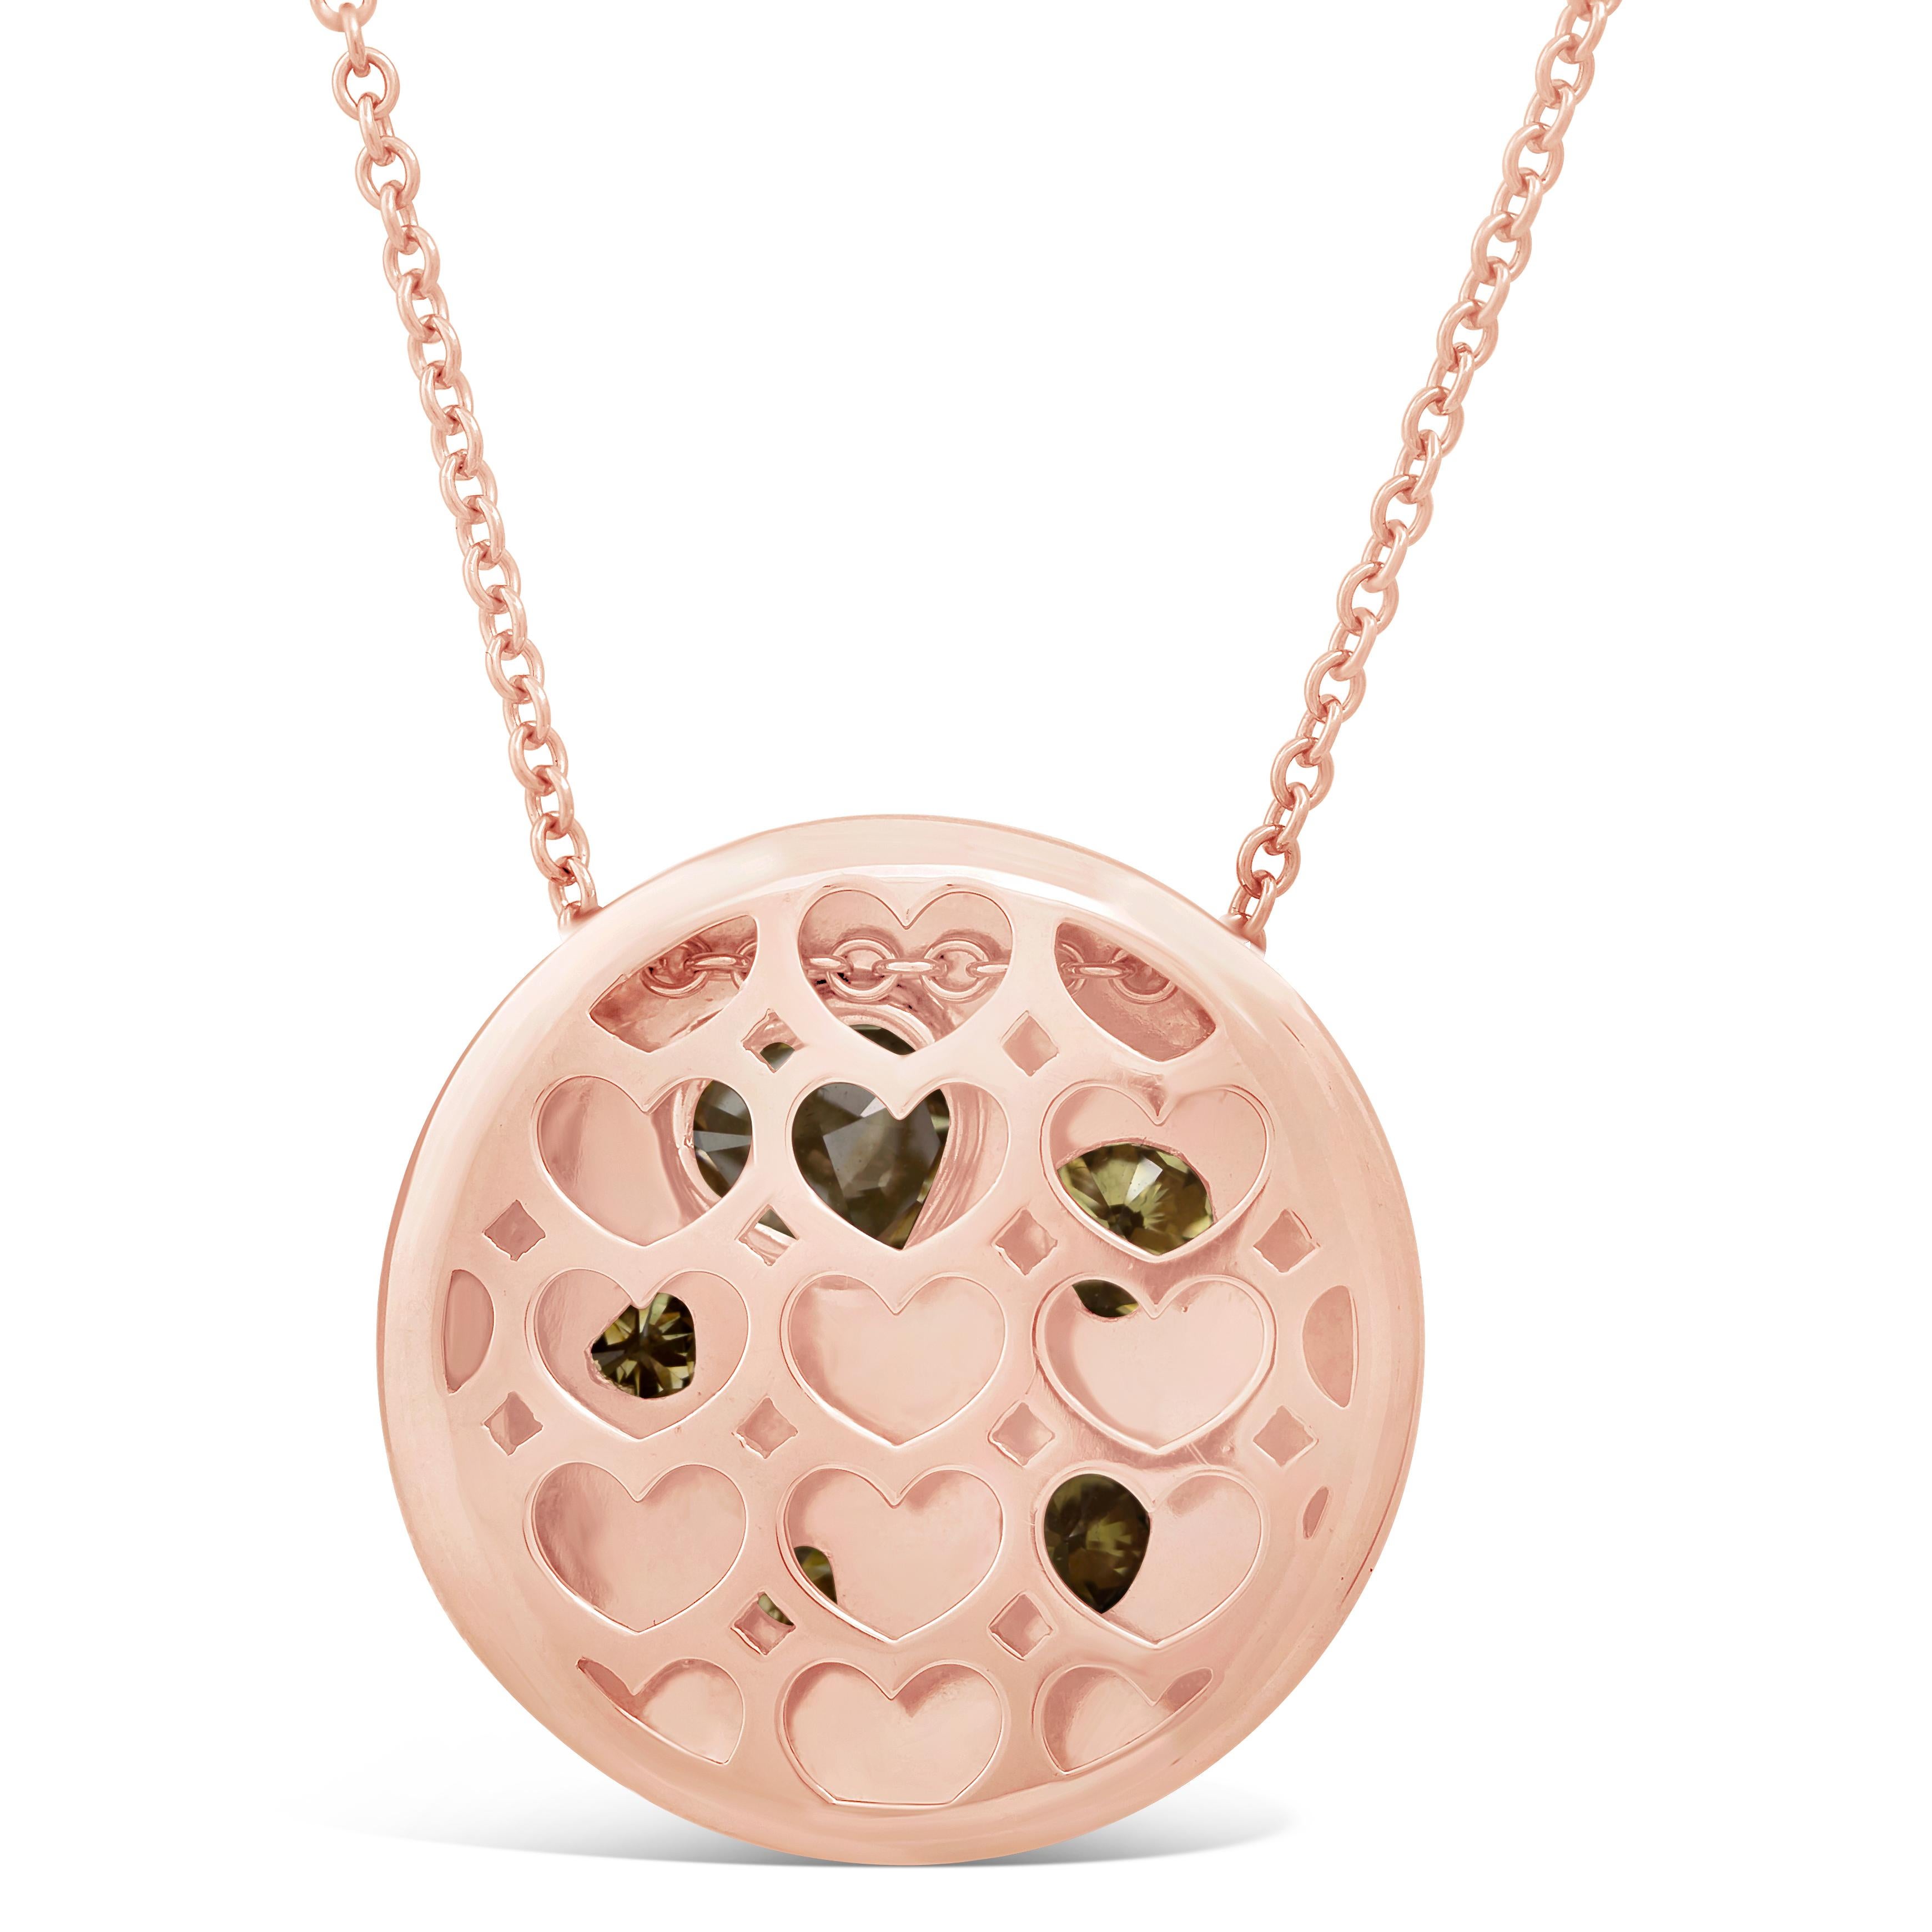 Mit 5 bunten, unterschiedlich großen Diamanten in Herzform, die in eine Lünette aus 18 Karat Roségold gefasst sind. Die Diamanten wiegen insgesamt 2.34 Karat. Die herzförmigen Diamanten werden durch runde, rosafarbene Diamanten akzentuiert, die in